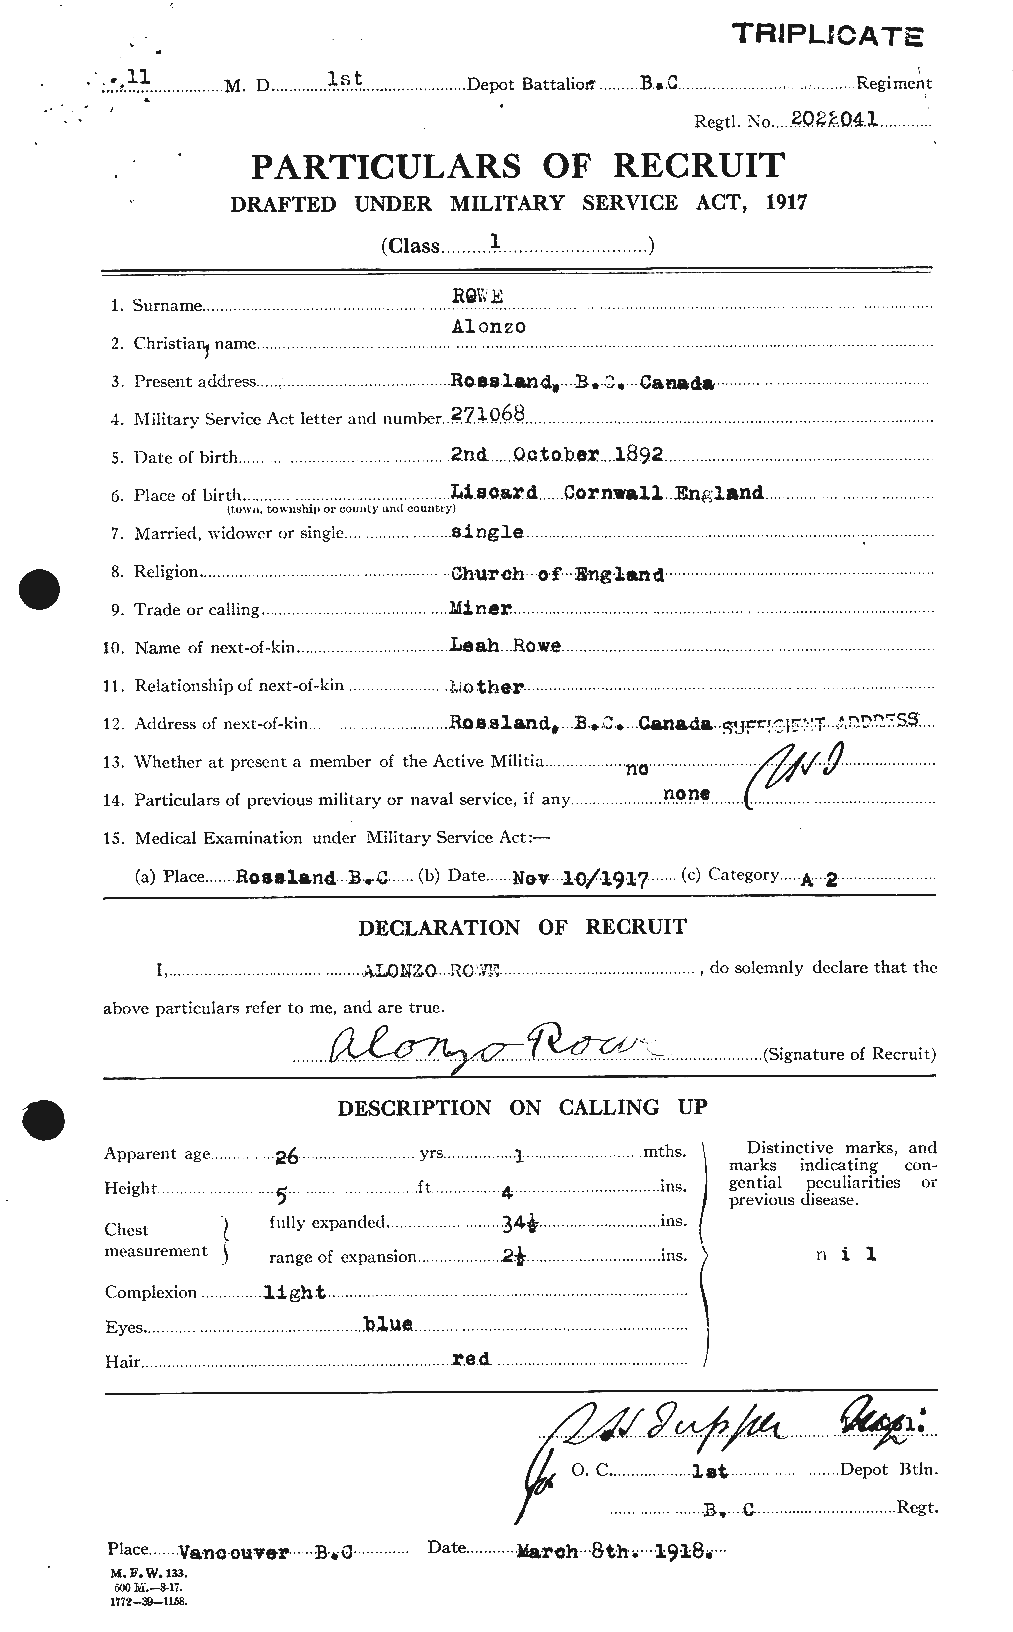 Dossiers du Personnel de la Première Guerre mondiale - CEC 615788a